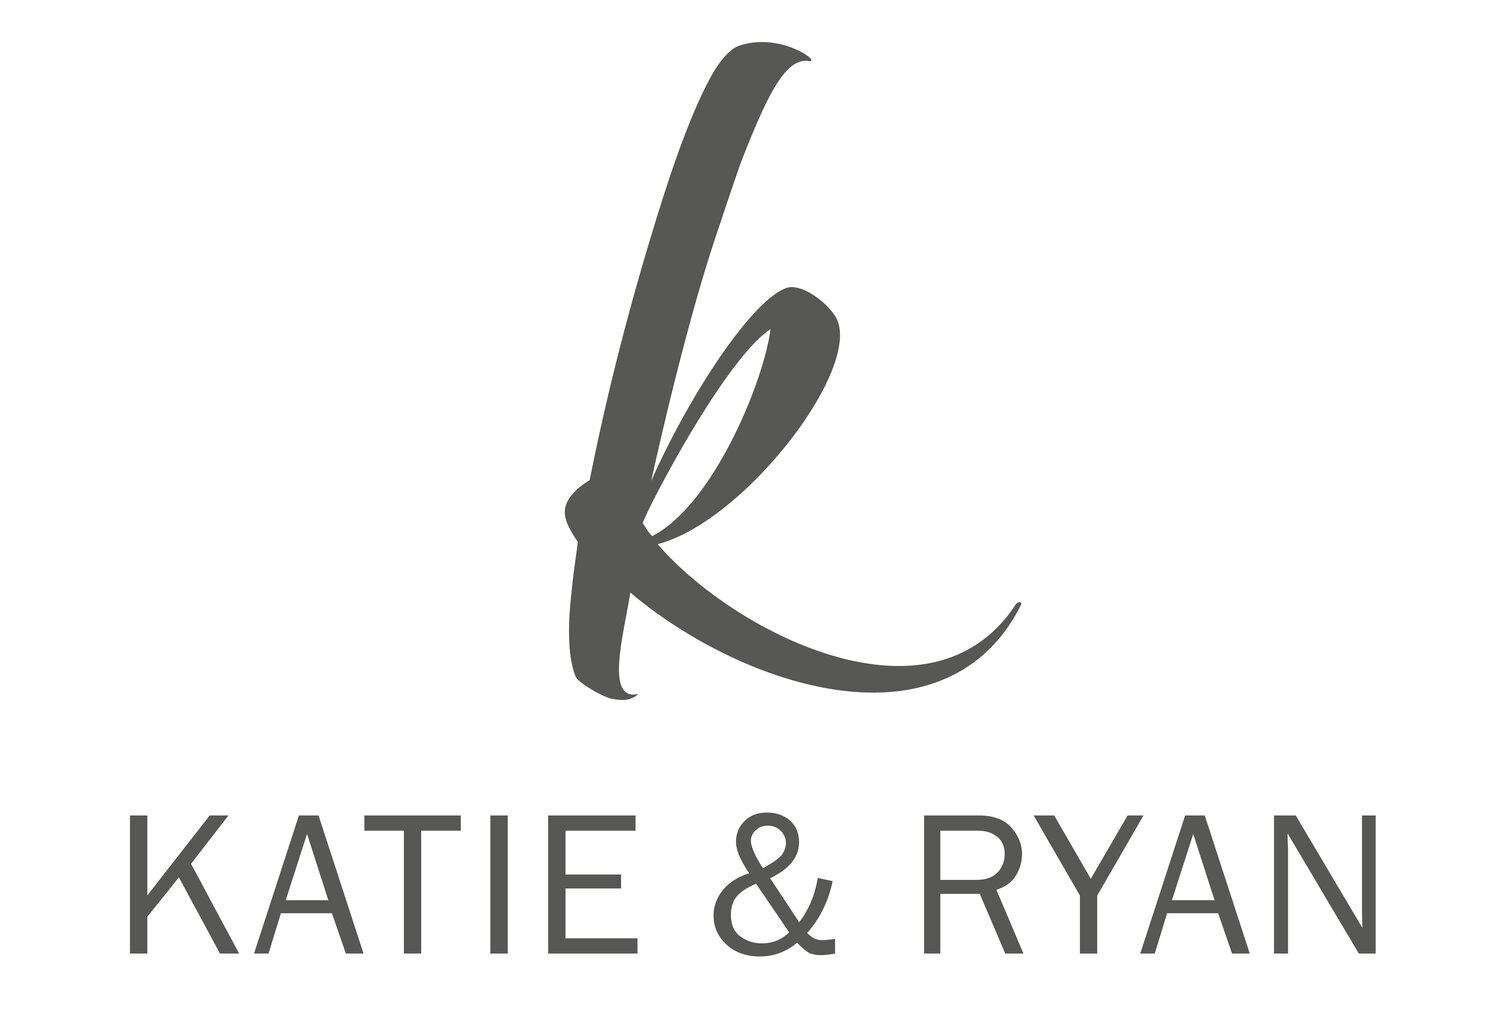 Katie & Ryan